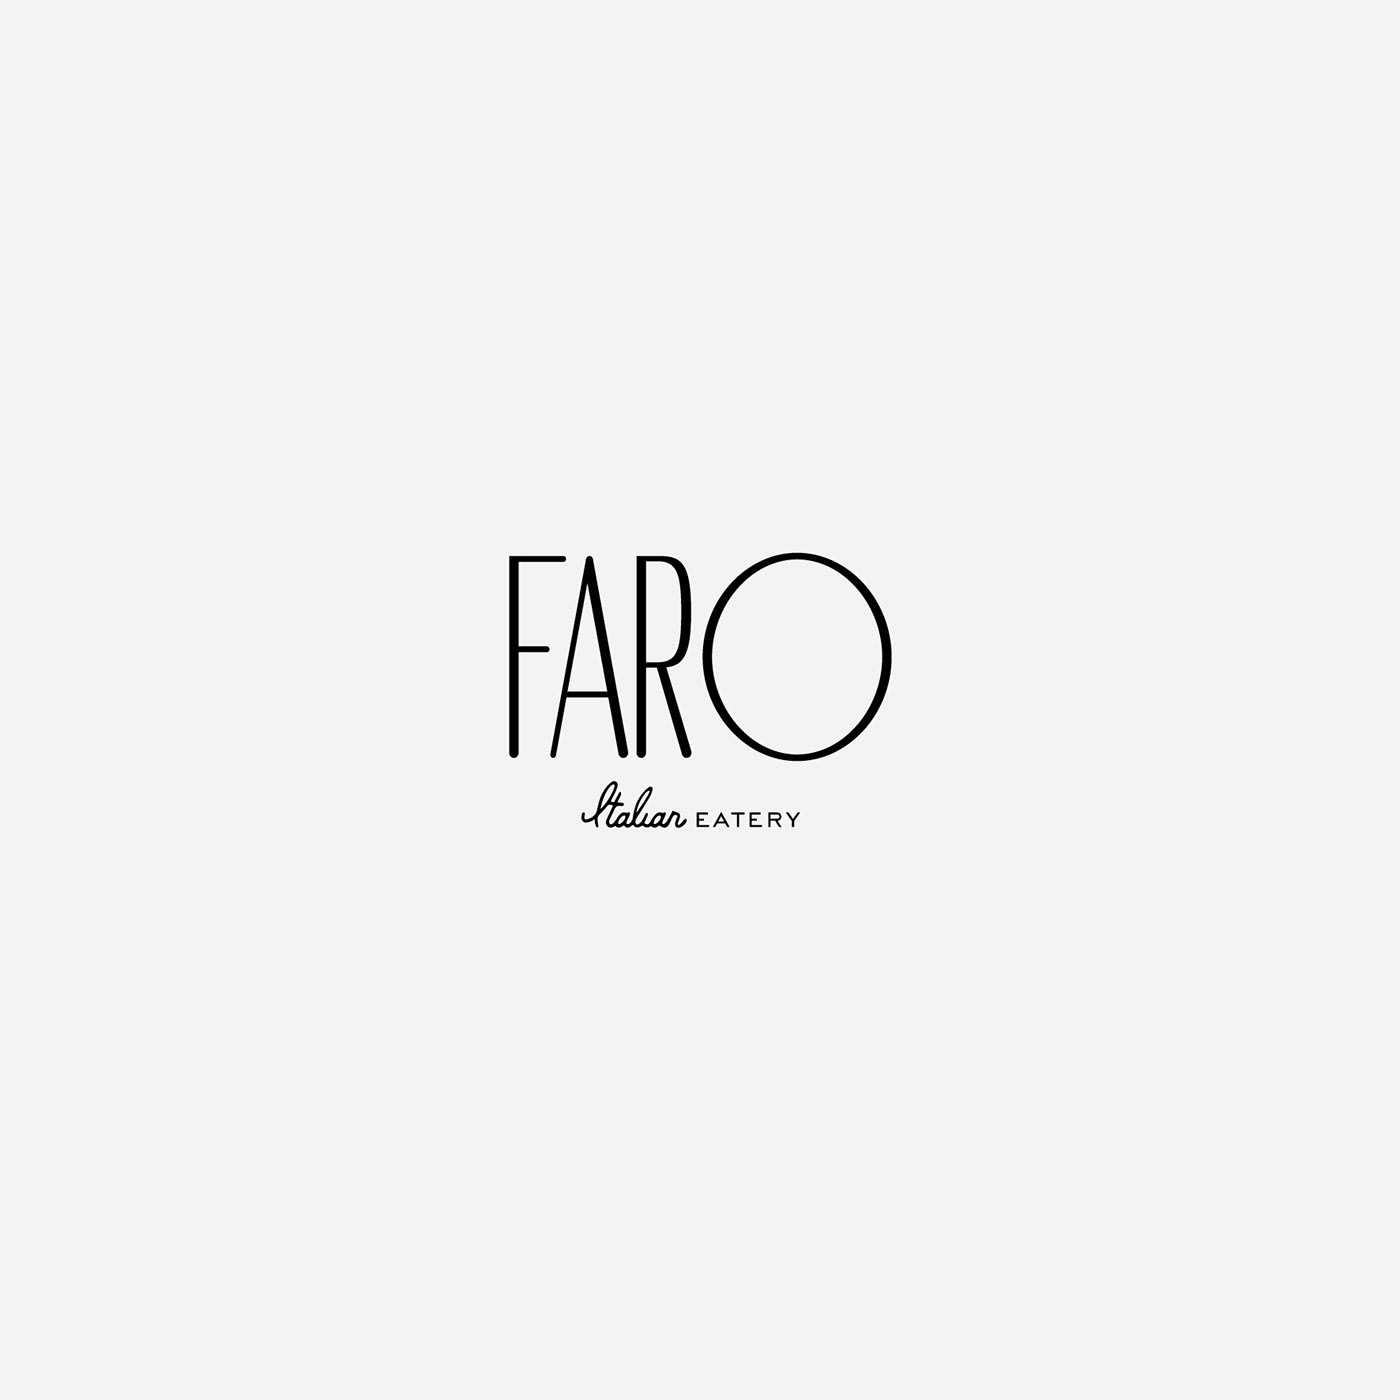 Faro Italian Eatery on Behance